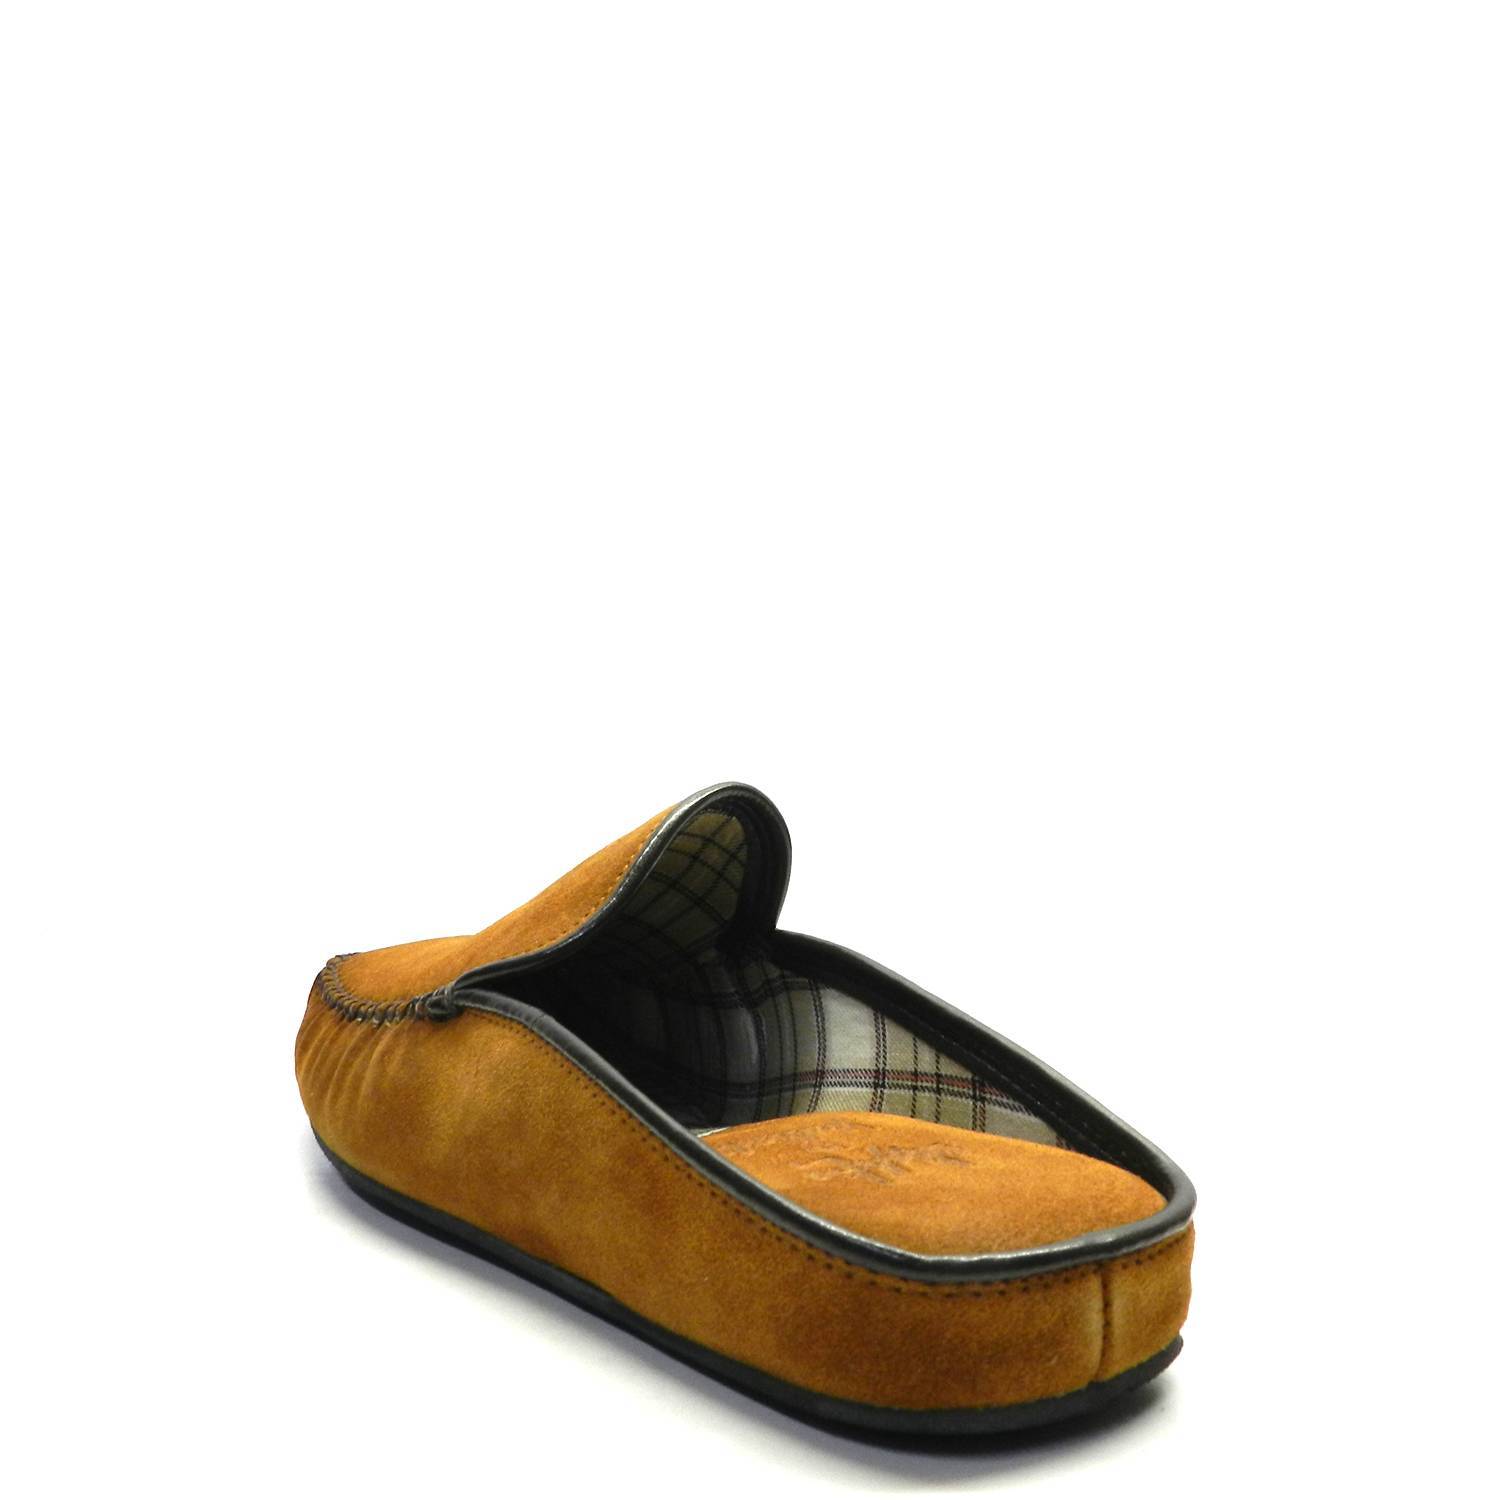 Zapatillas casa de la marca Calzados Polo, modelo 1951-070 en color cuero. Zapatillas de casa estilo mocasín destalonado, con talón al aire. Corte en ante con ribete y costura visible en la punta. Cómoda plantilla acolchada y fina suela de caucho.